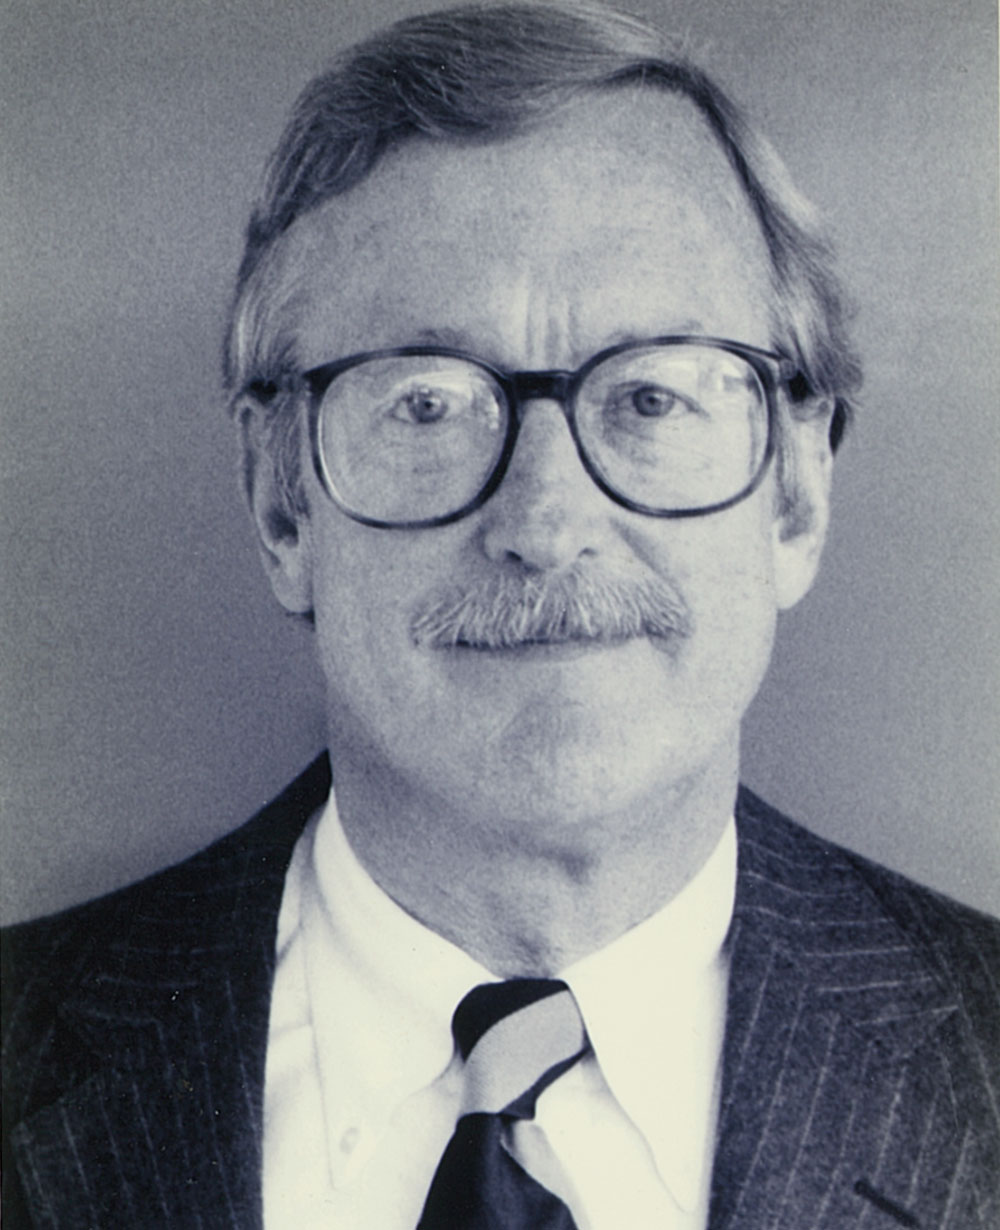 Jay Rockey, PRSA President of 1976